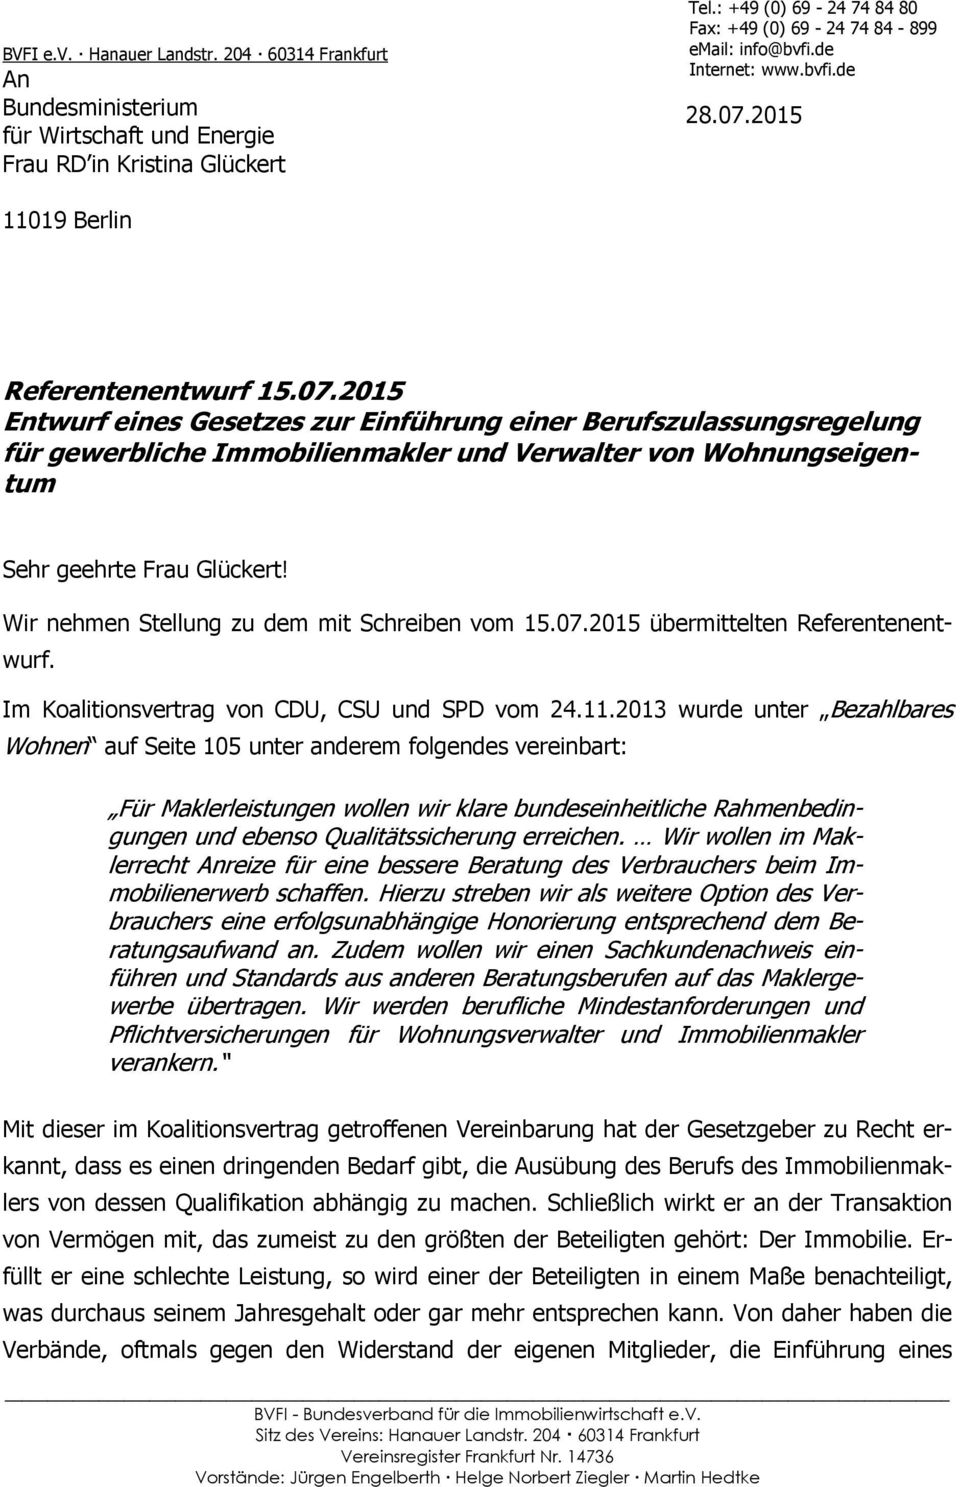 Wir nehmen Stellung zu dem mit Schreiben vom 15.07.2015 übermittelten Referentenentwurf. Im Koalitionsvertrag von CDU, CSU und SPD vom 24.11.